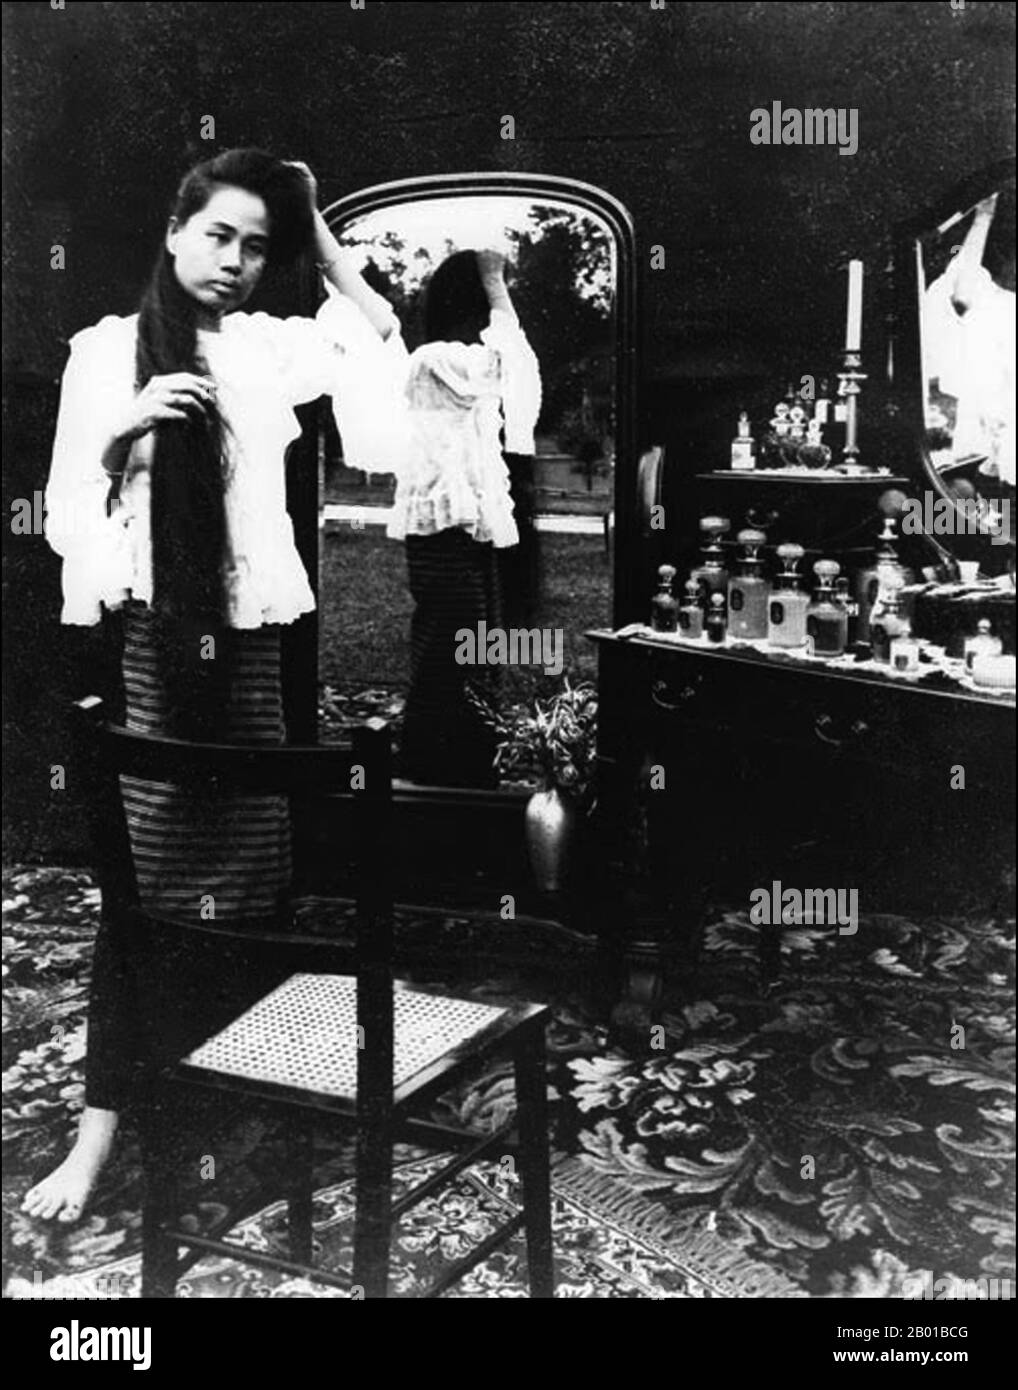 Thailandia: Dara Rasmi (26 agosto 1873 - 9 dicembre 1933), Principessa di Chiang mai e Siam posa con specchi per esporre i suoi capelli lunghi. Foto di Abe Bunnak (inizio 20th ° secolo), 1905. La principessa Dara Rasmi era la principessa di Chiang mai e Siam (in seguito Thailandia) e la figlia del re Inthawichayanon e della regina Thipkraisorn Rajadewi di Chang mai, una scion della dinastia Chao Chet Ton. Fu una delle principesse consorte di Chulalongkorn, re Rama V di Siam, e diede alla luce una figlia del re Chulalongkorn, principessa Vimolnaka Nabisi. Foto Stock